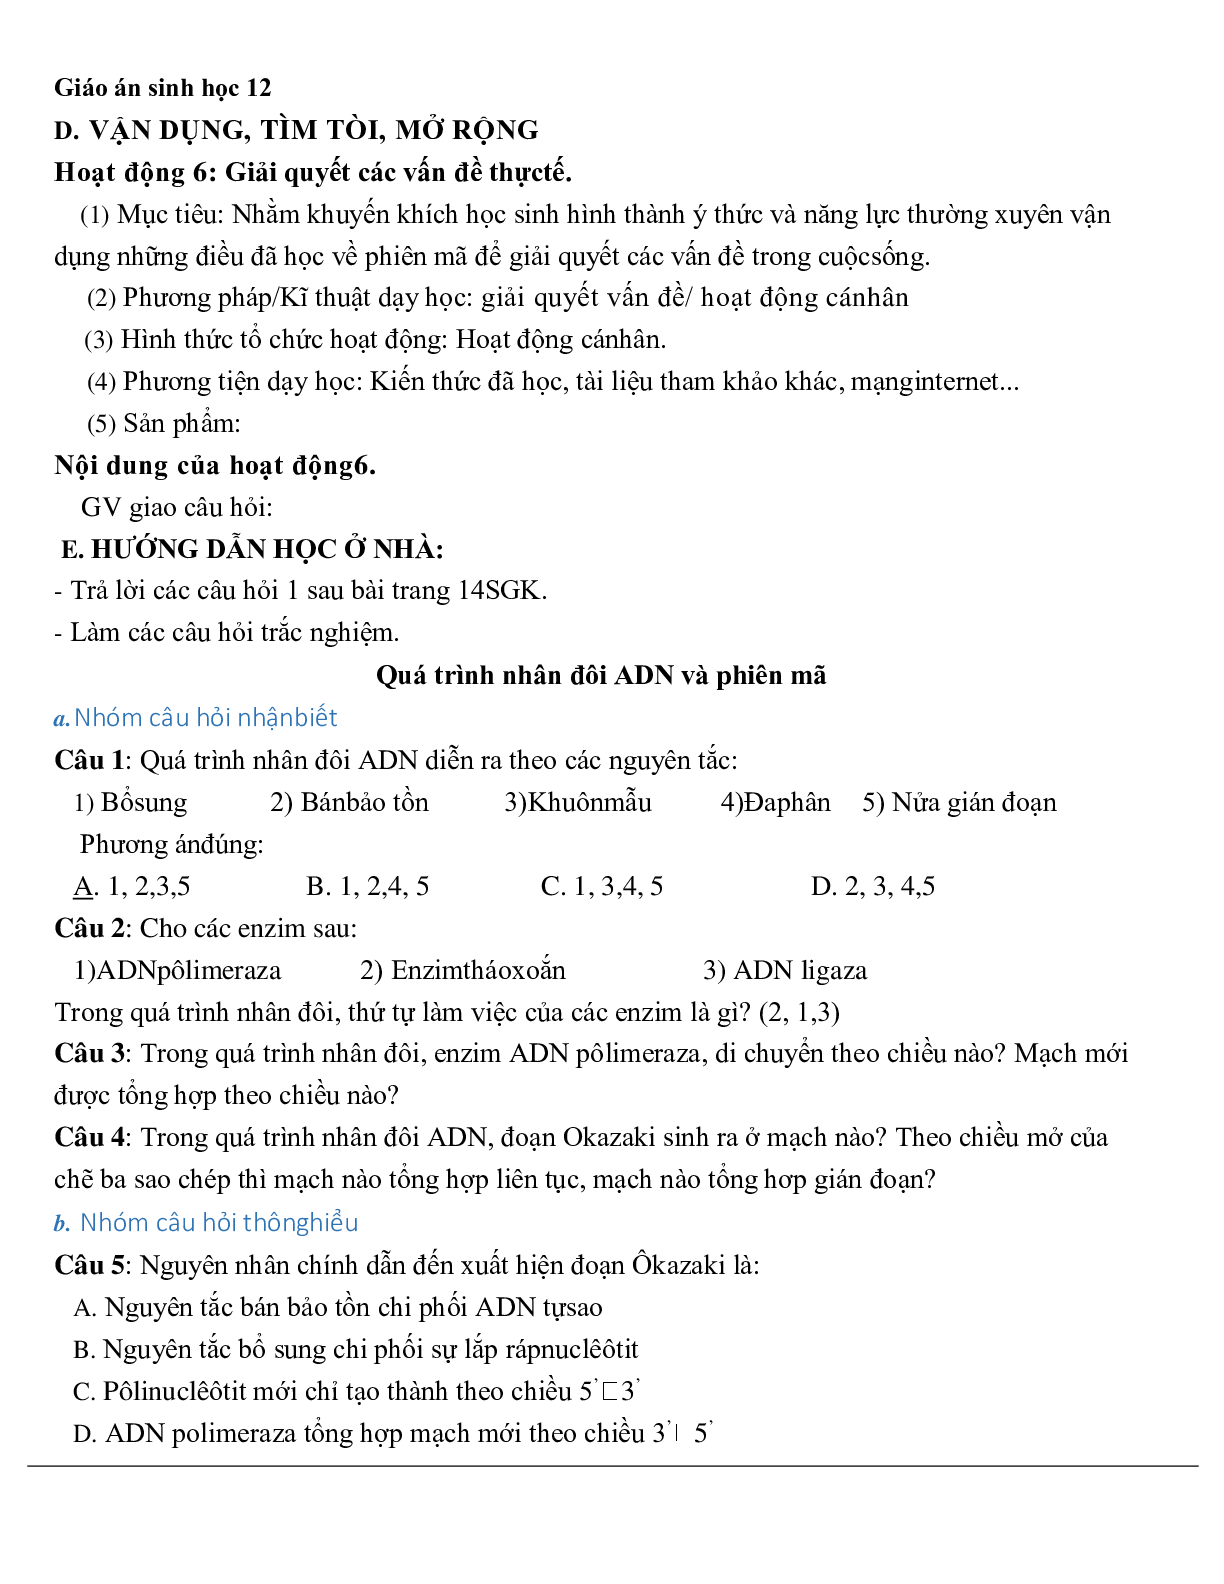 Giáo án Sinh học 12 Bài 2: Phiên mã và dịch mã mới nhất (trang 8)